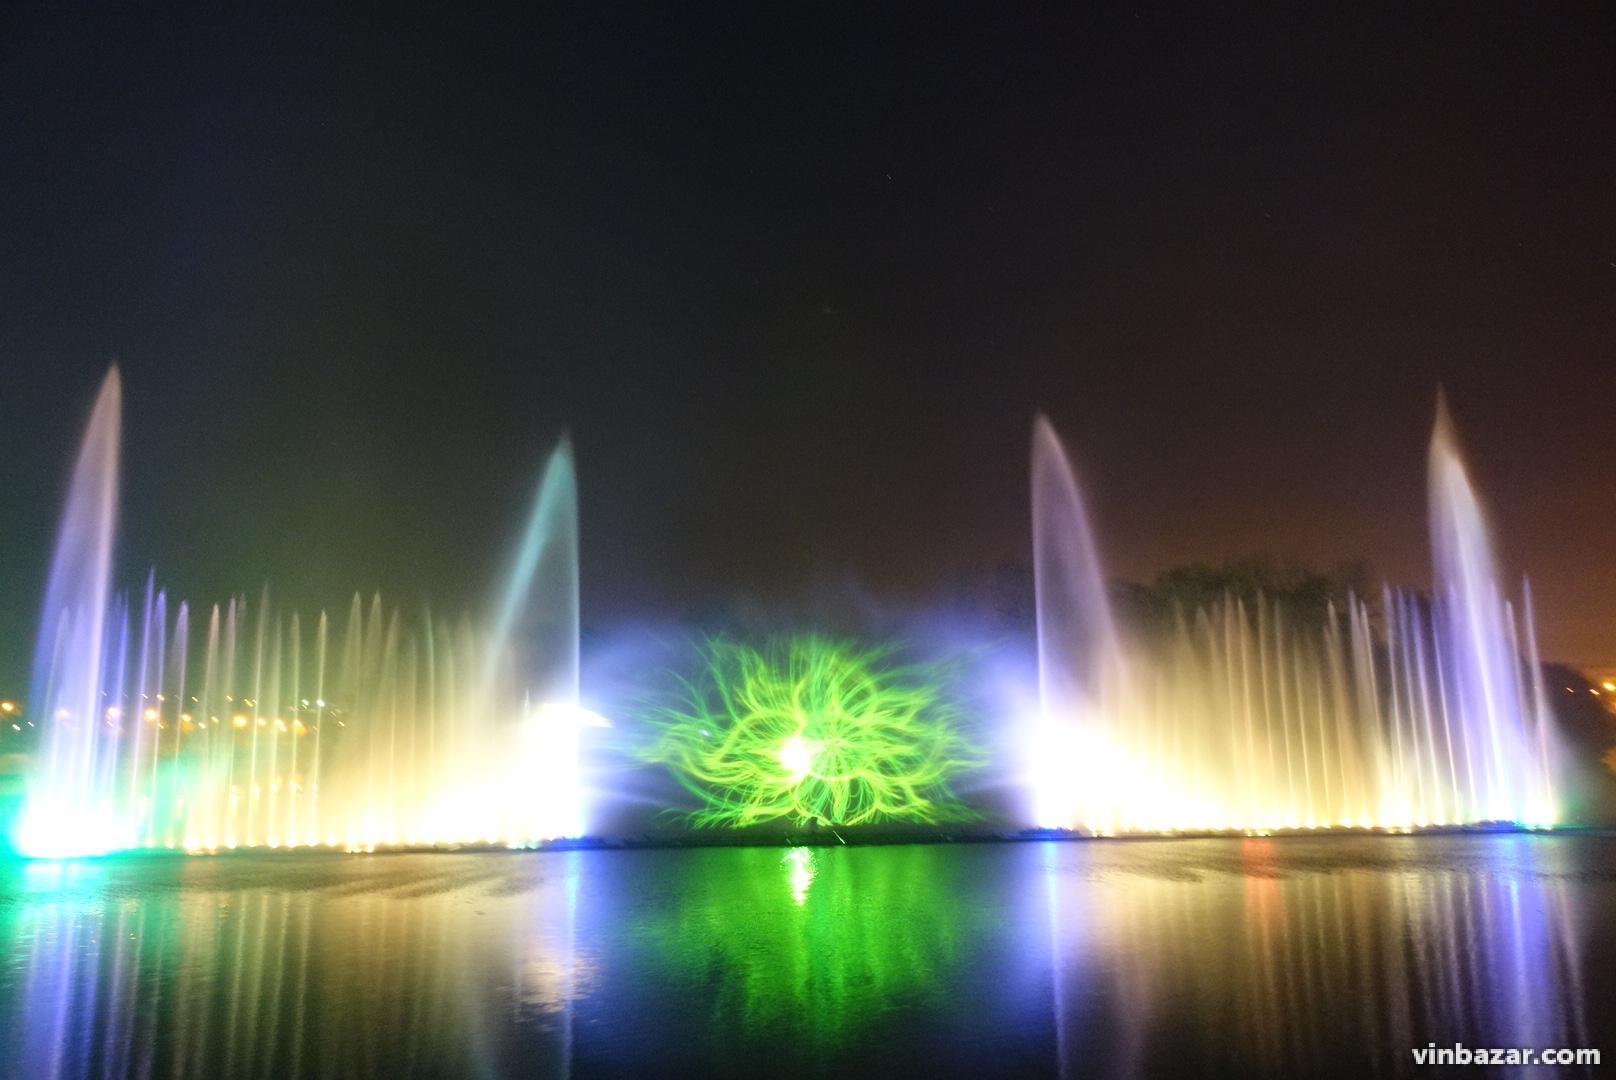 10 років тому у Вінниці вперше запустили фонтан Roshen. Історія водограю у світлинах (Фото)